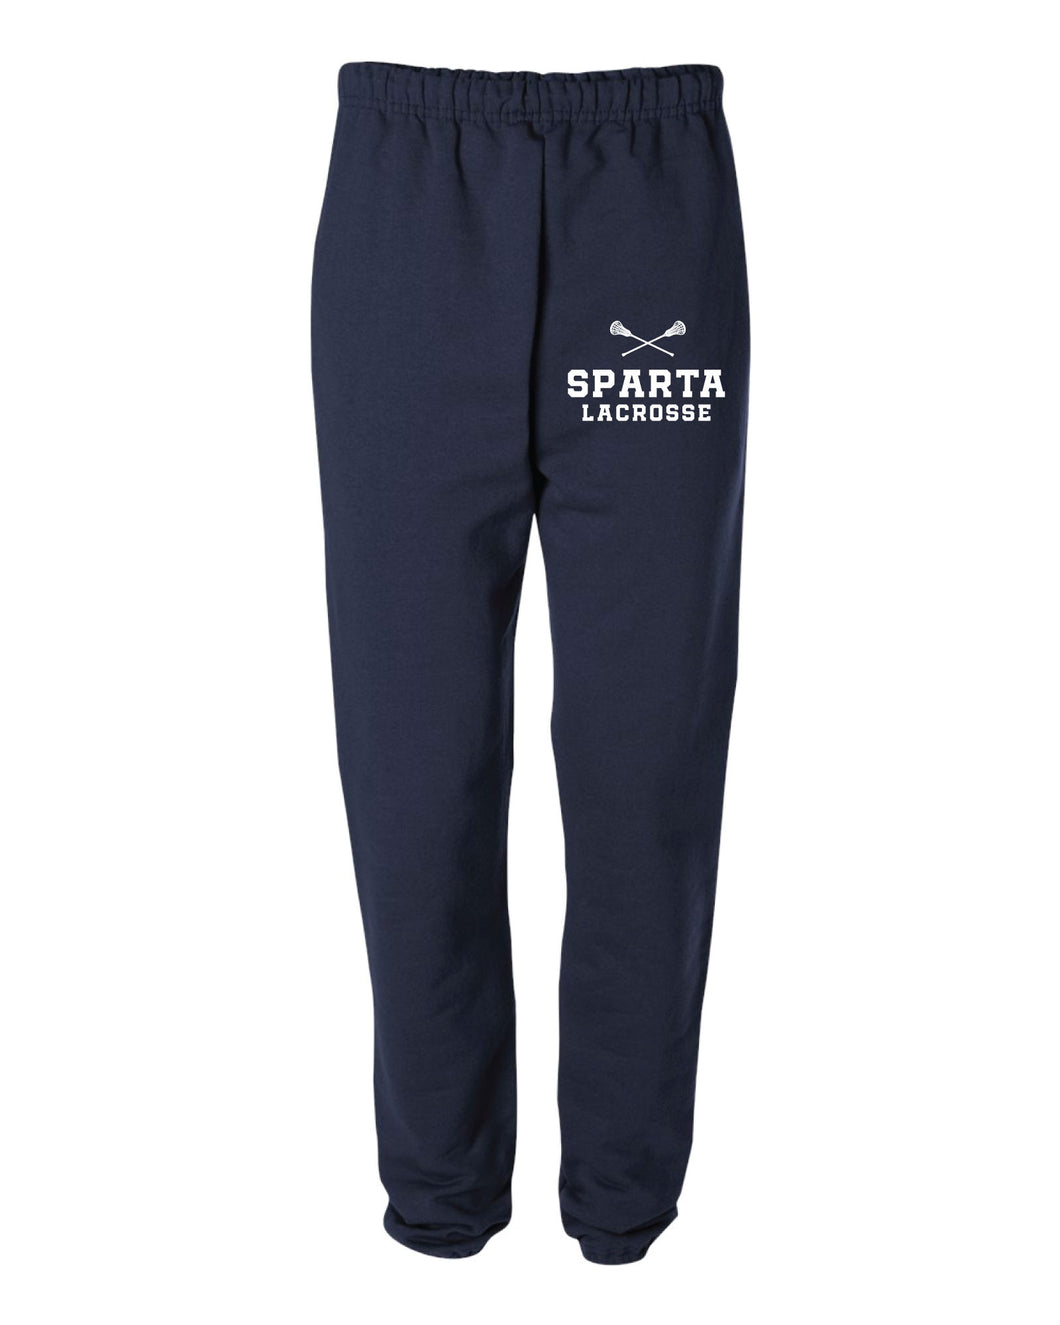 Sparta Lacrosse Cotton Sweatpants - Navy - 5KounT